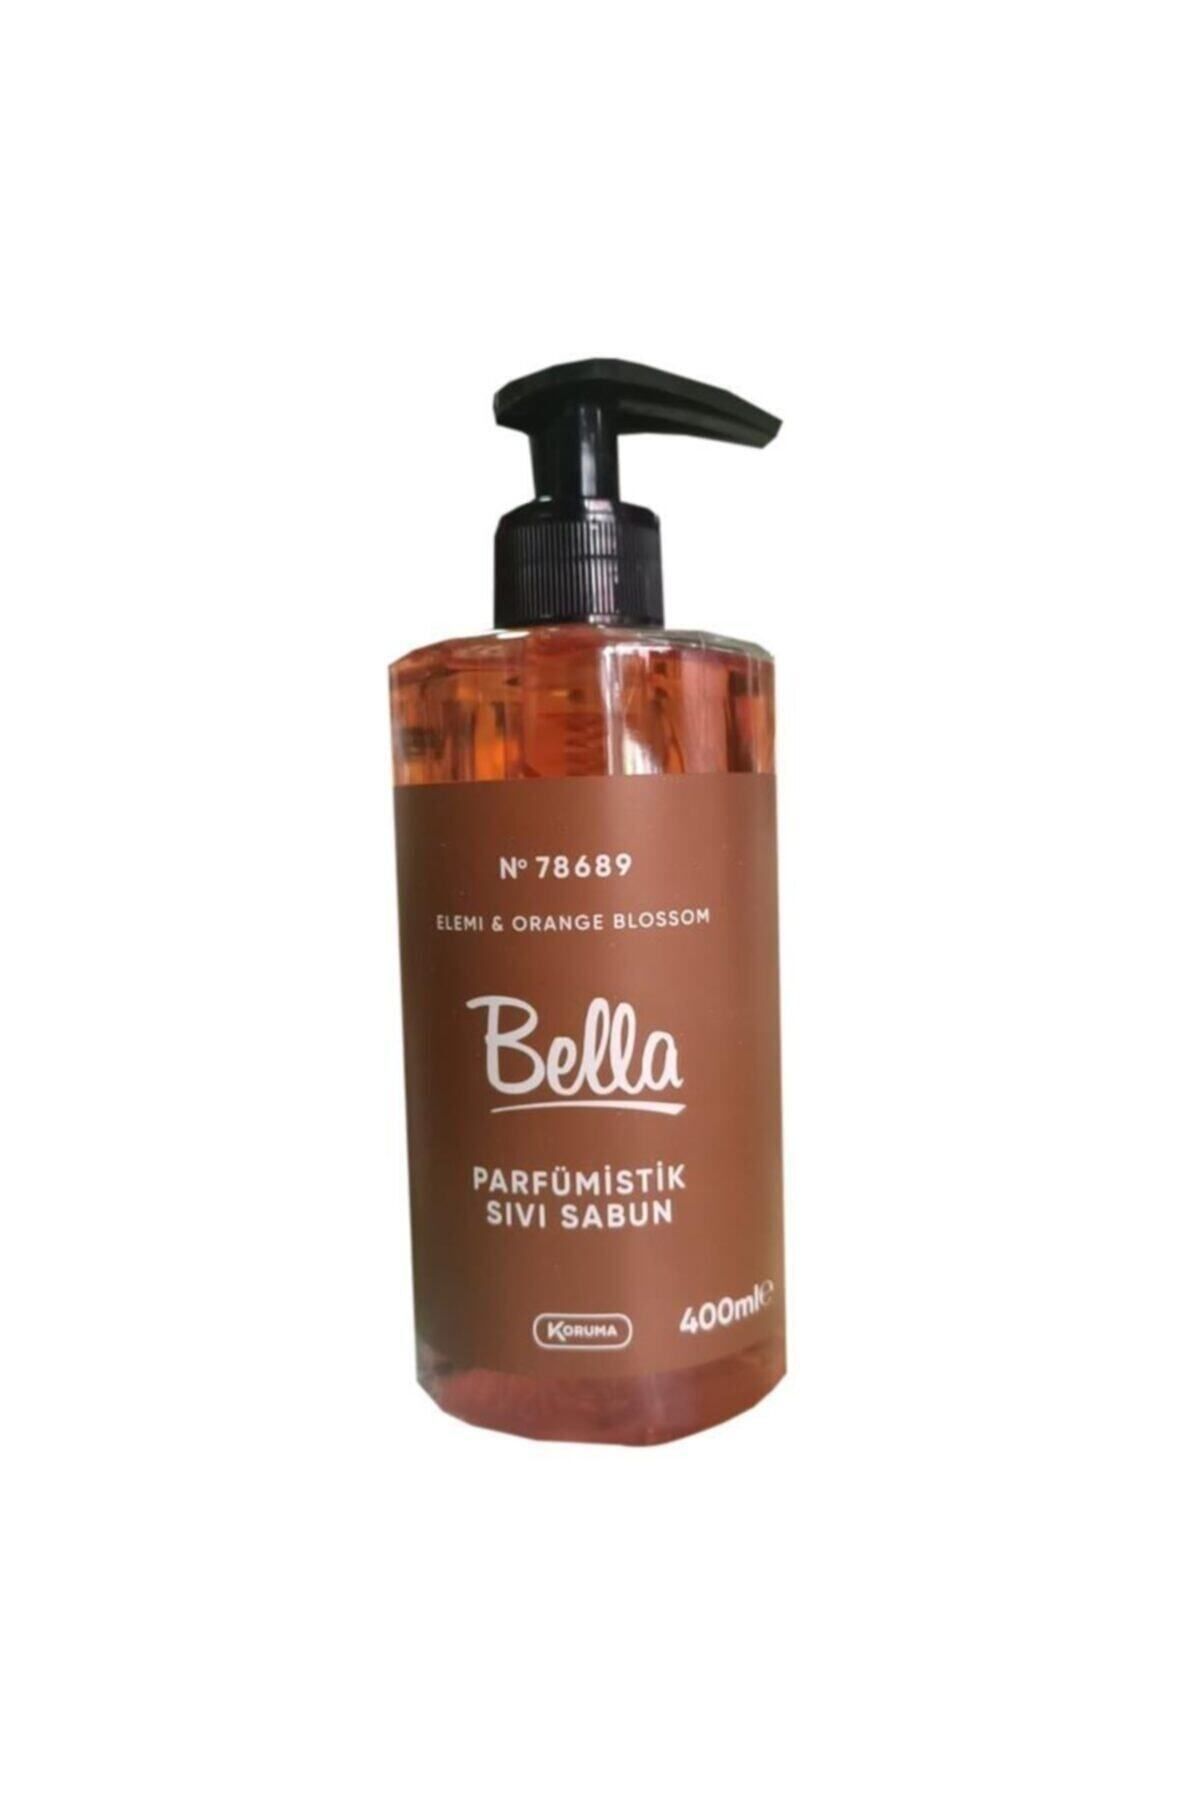 Bella No 78689 Elemi & Orange Blossom Parfümistik Sıvı Sabun 400 ml